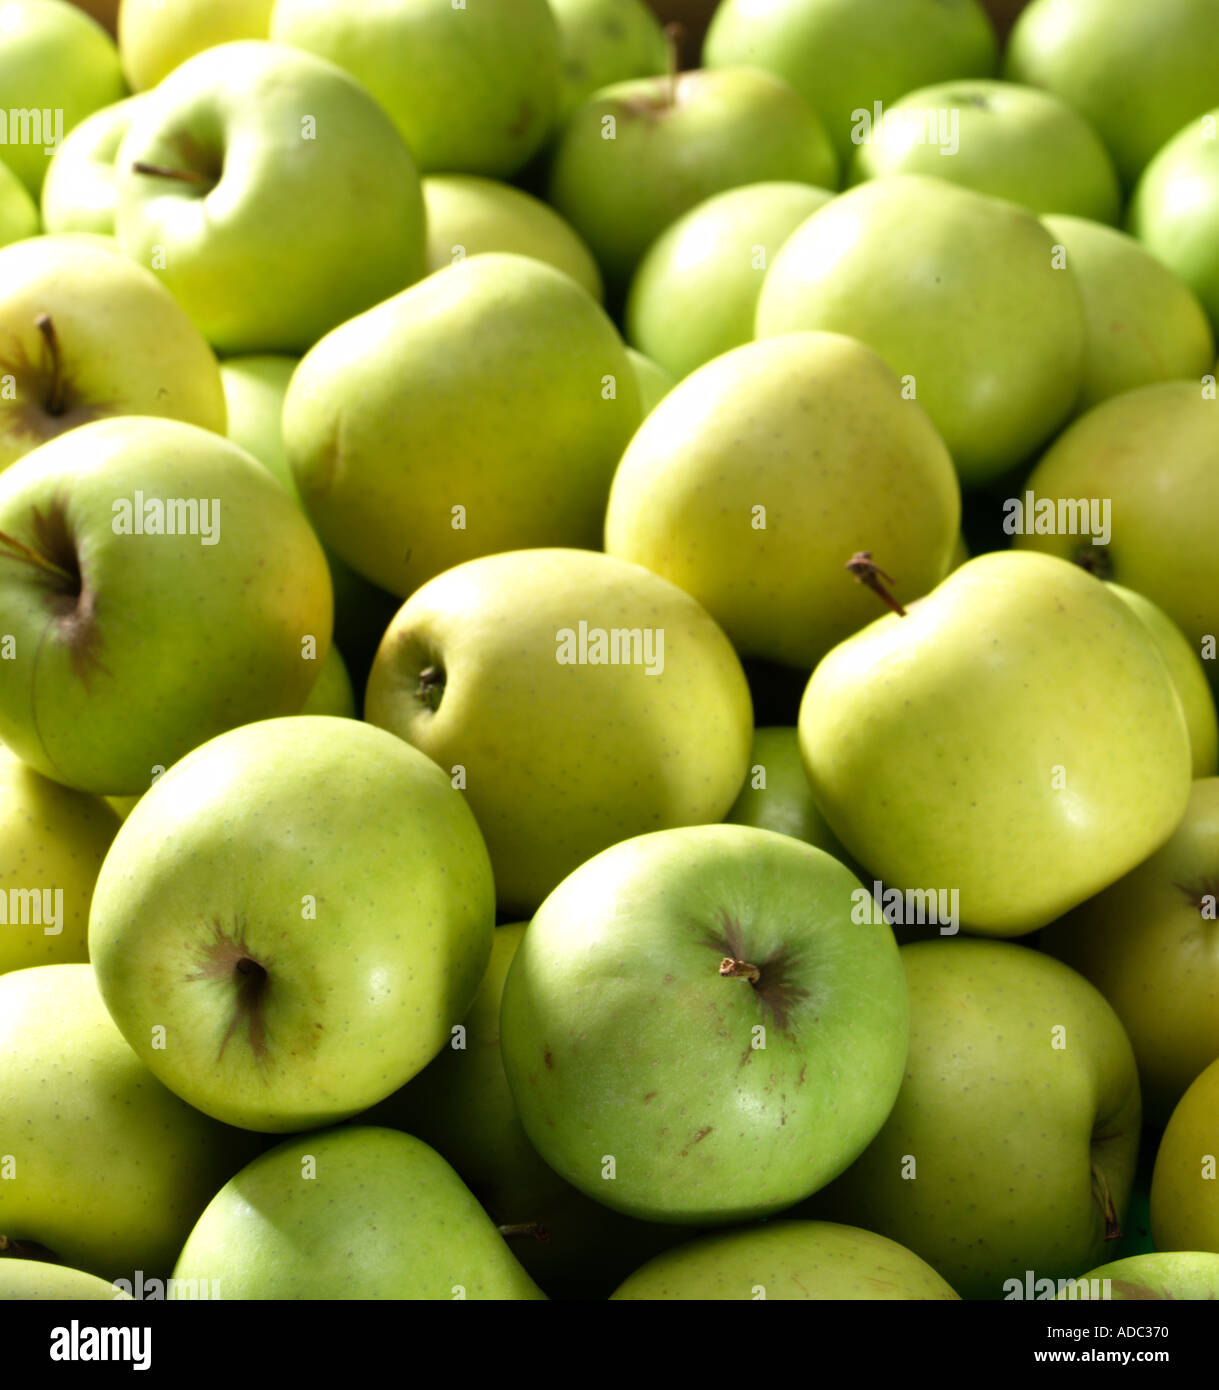 Beschnittzugabe Schuss Gruppe von Äpfeln Stockfoto